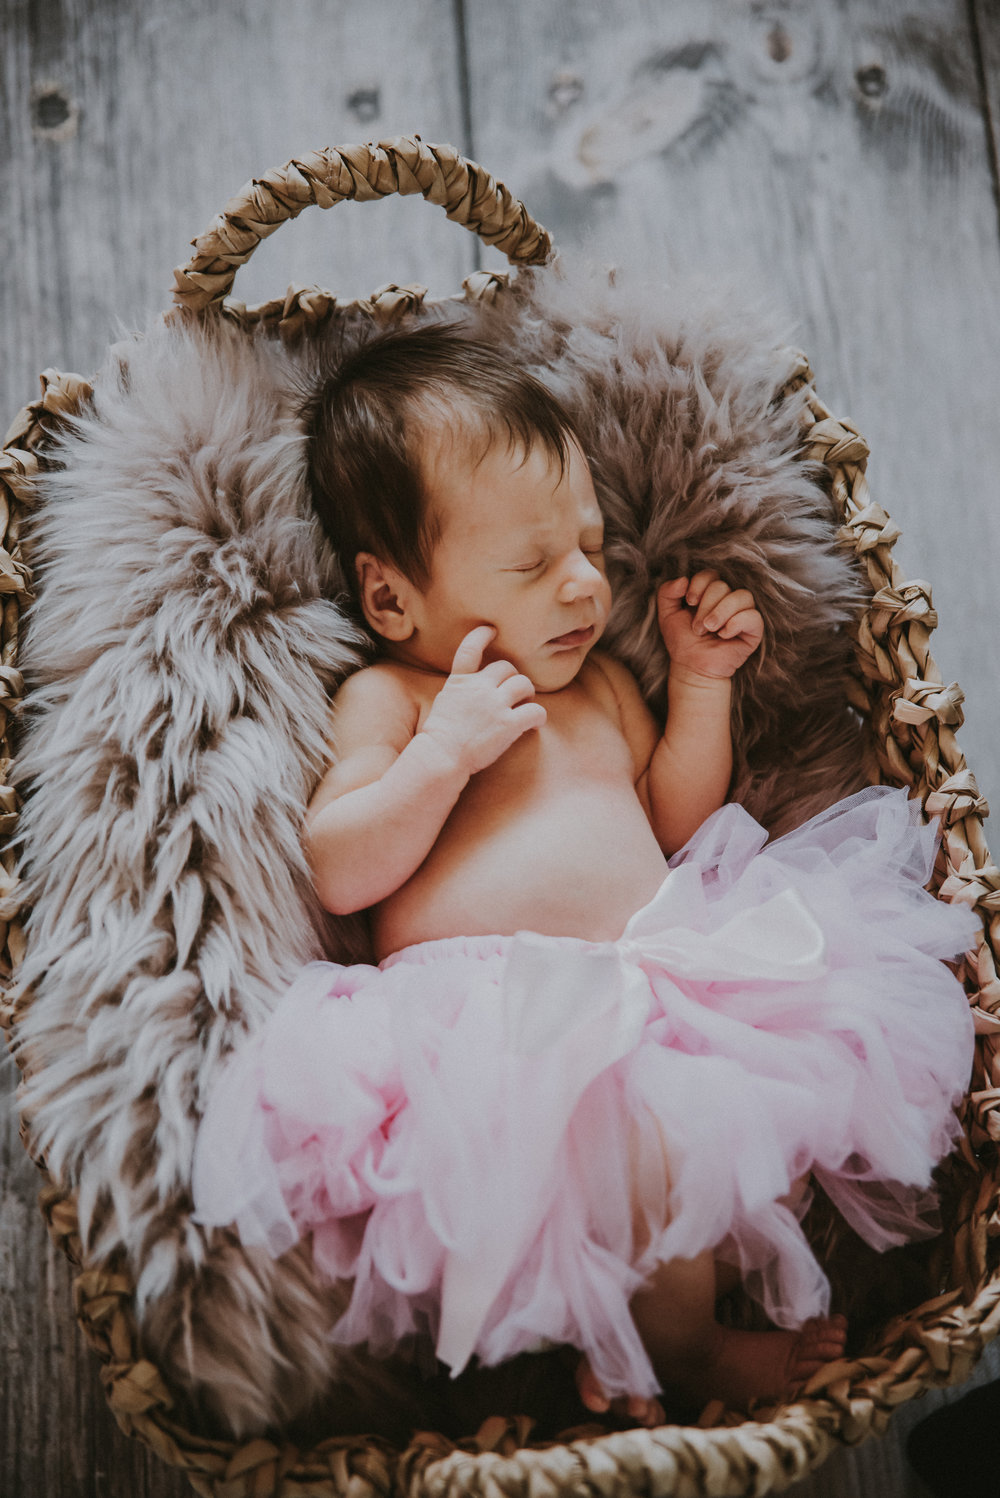 vauvakuvaus — Ninka Valokuvaus — Blogi